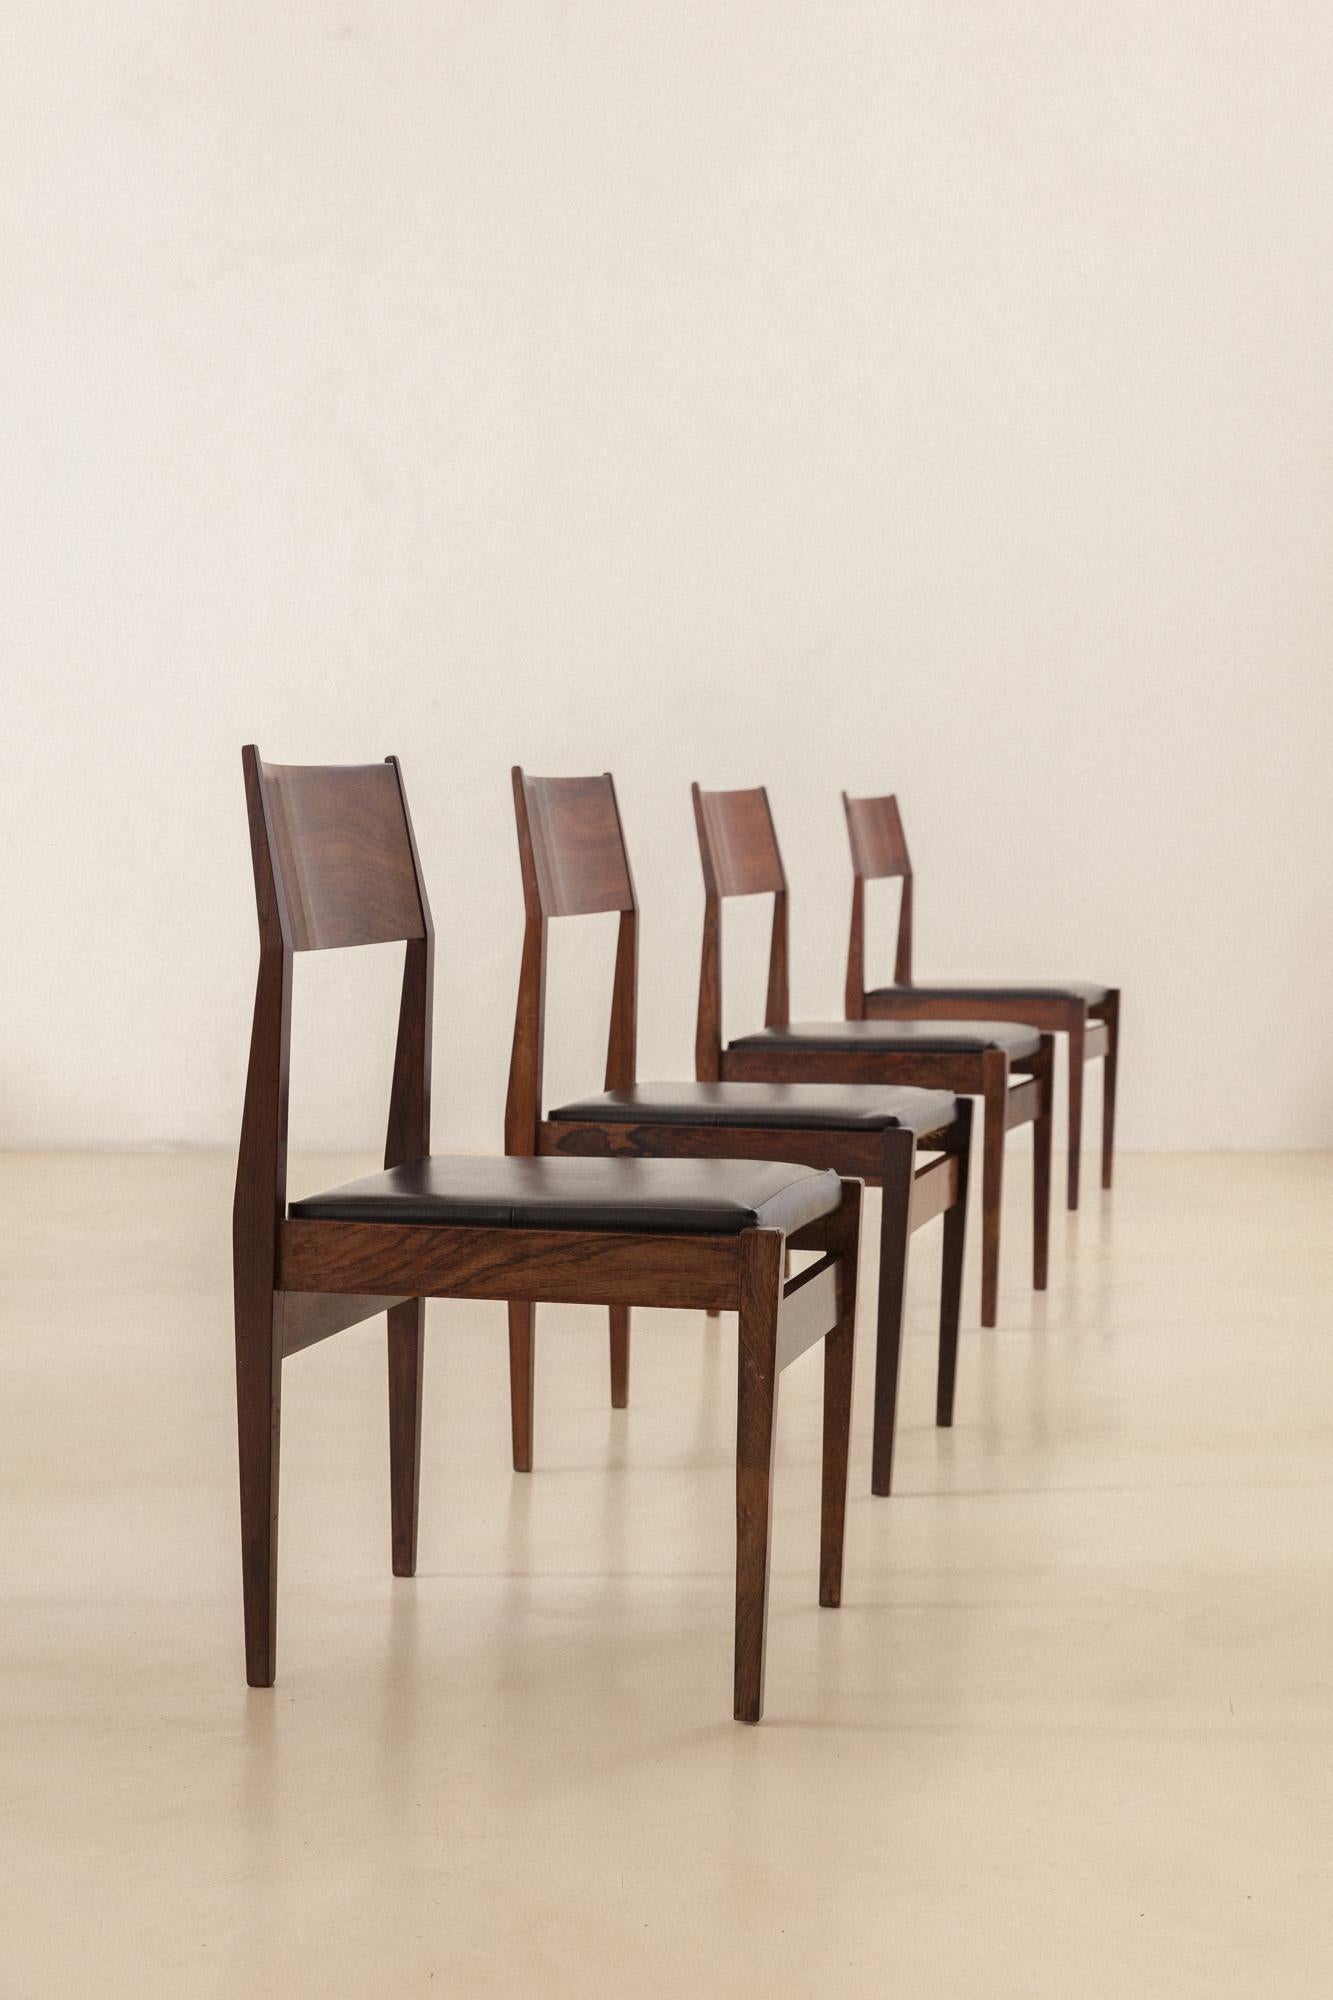 Diese Stühle sind aus Palisanderholz mit Ledersitzen und wurden um 1960 von iadê hergestellt. Die Stücke haben rechteckige Profile aus massivem Palisanderholz mit großen und bequemen Sitzen und leicht geneigten Rückenlehnen aus schönem